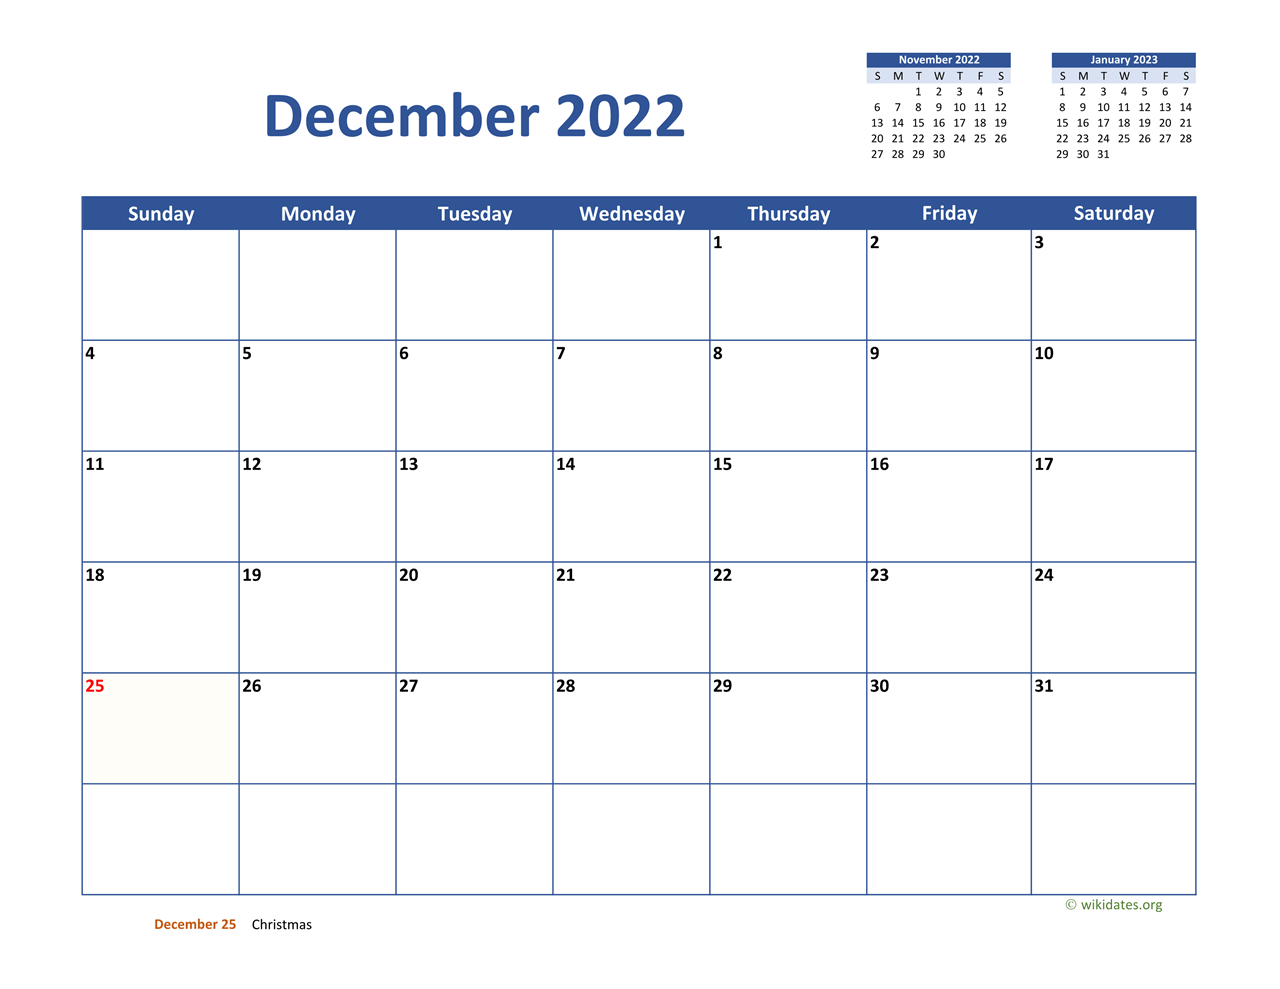 Dec 2022 Jan 2023 Calendar December 2022 Calendar Classic | Wikidates.org